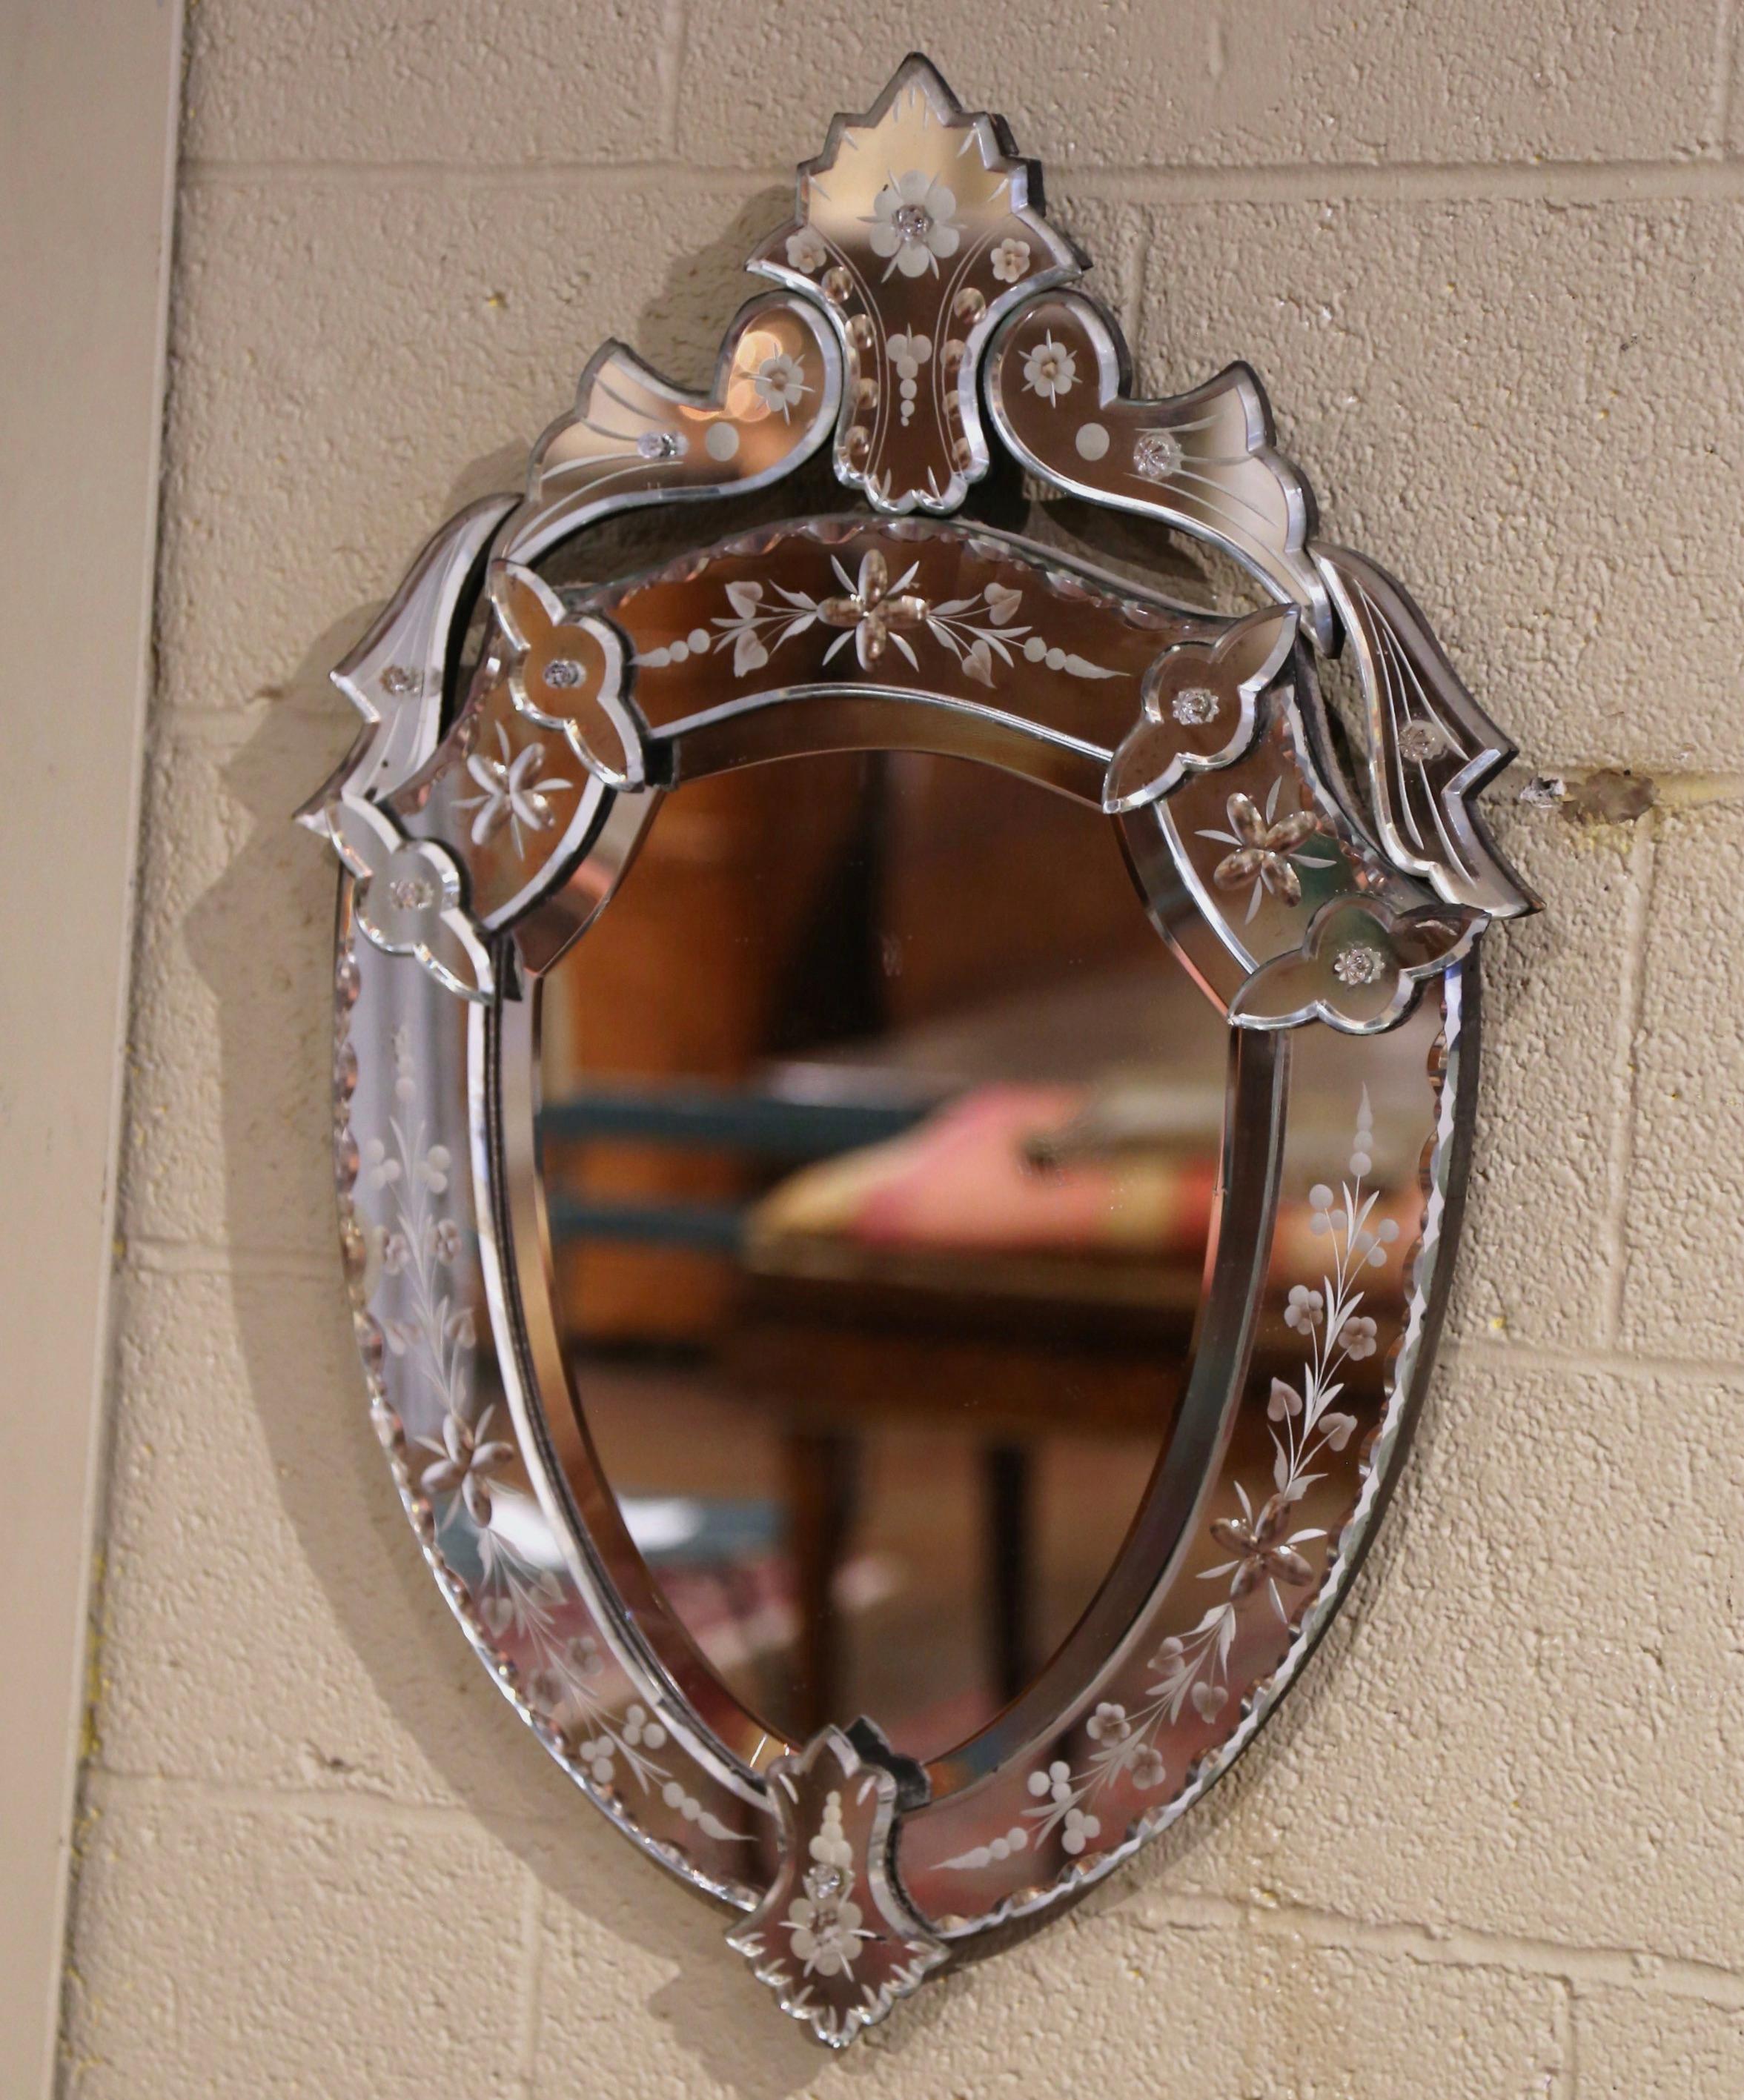 Dekorieren Sie ein Badezimmer oder ein Schlafzimmer mit diesem eleganten, antiken Spiegel. Der um 1960 in Venedig (Italien) gefertigte Wandspiegel in Form eines Schildes mit geschnitztem Dekor am Giebel weist eine handgemalte florale Ätzung zwischen